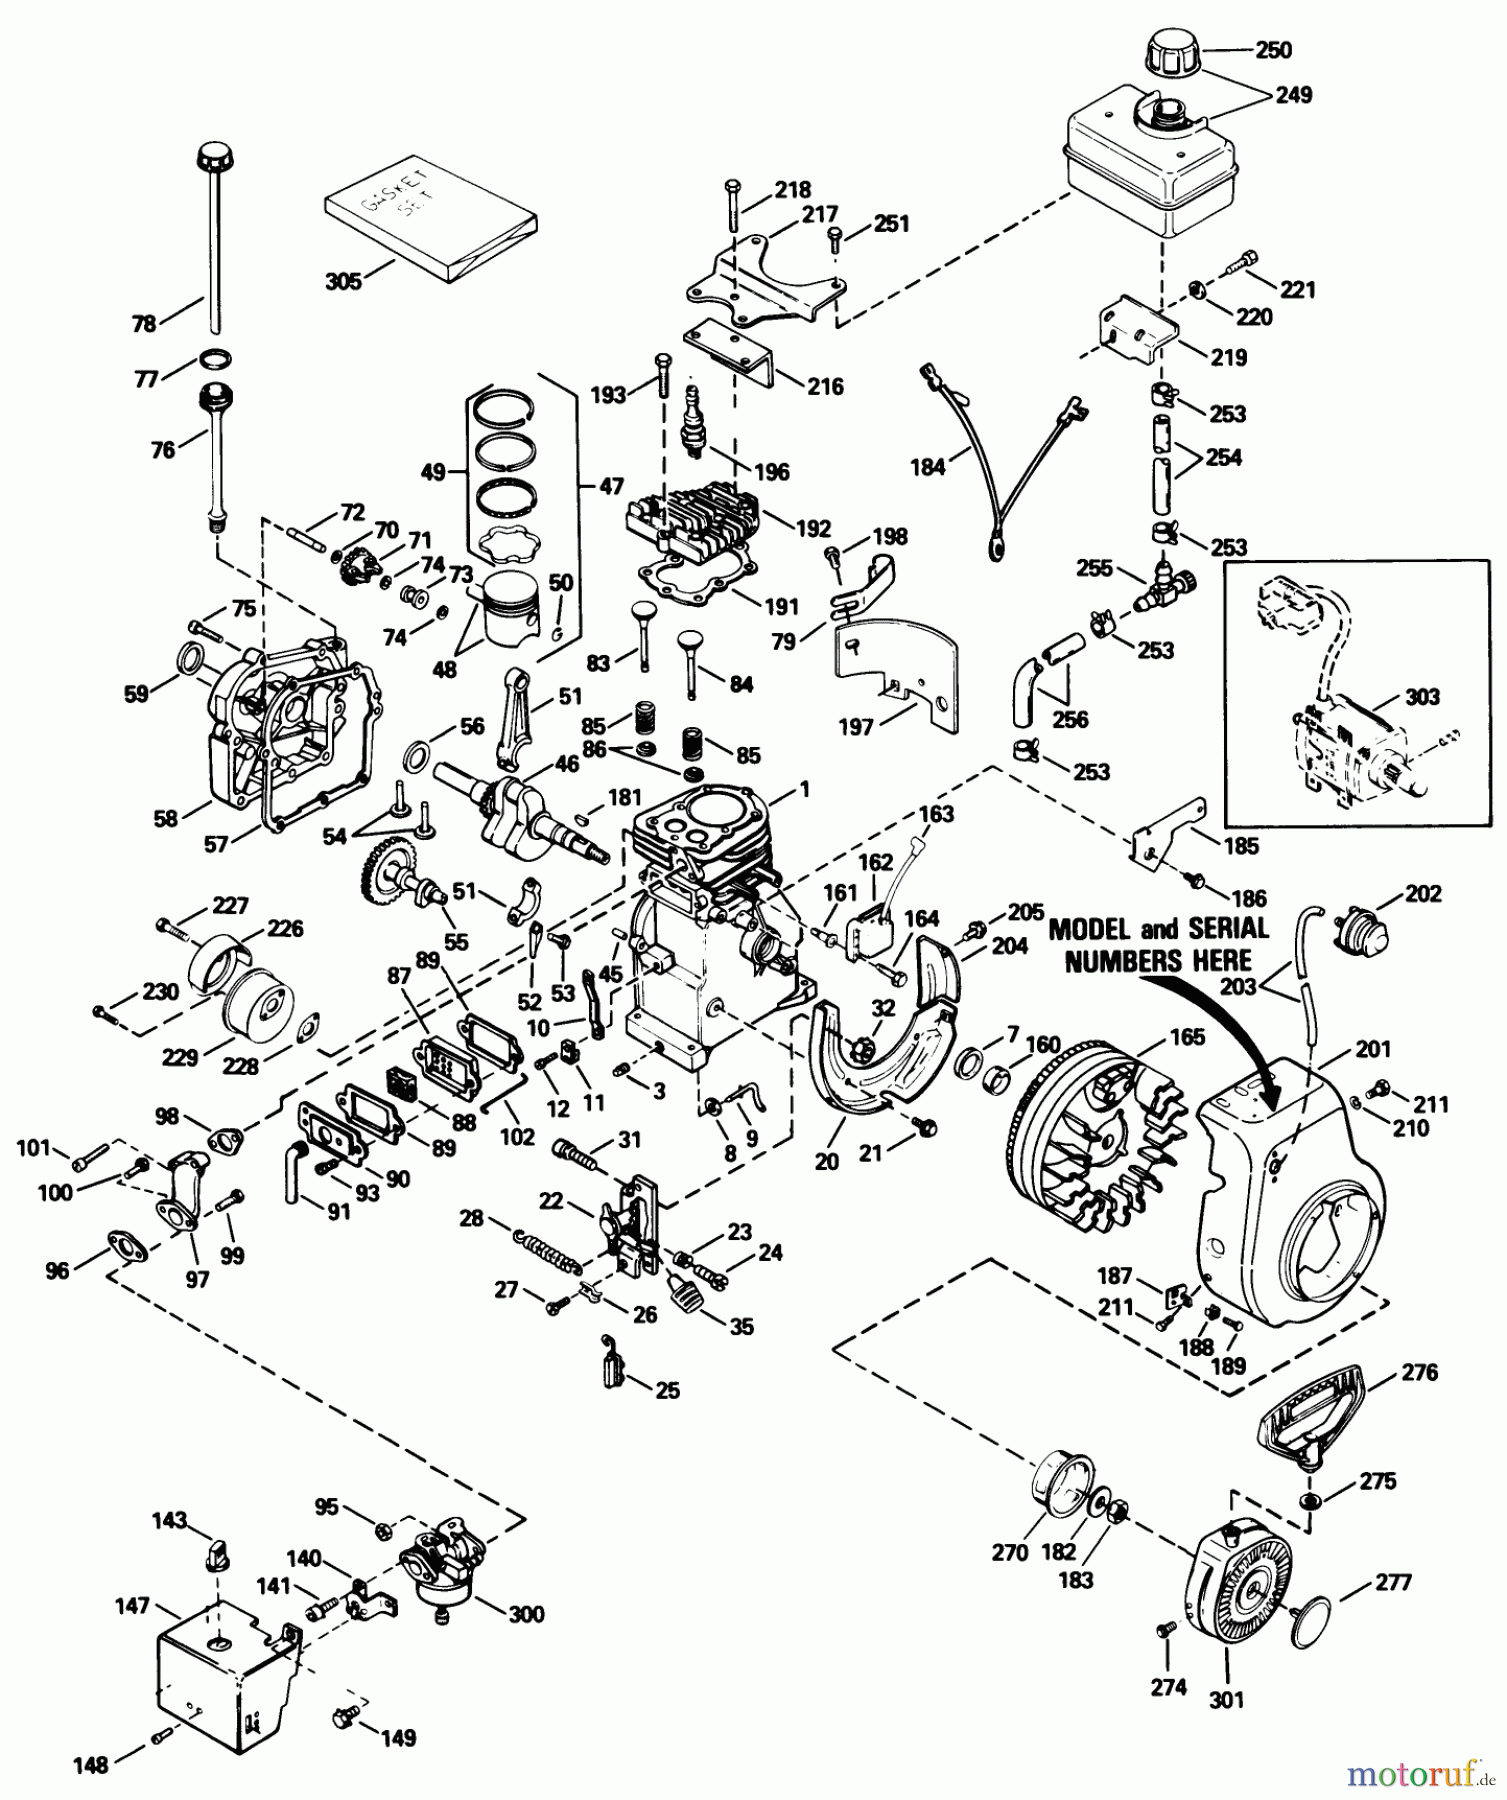  Toro Neu Snow Blowers/Snow Throwers Seite 1 38035 (3521) - Toro 3521 Snowthrower, 1989 (9000001-9999999) ENGINE TECUMSEH MODEL H35-45598T